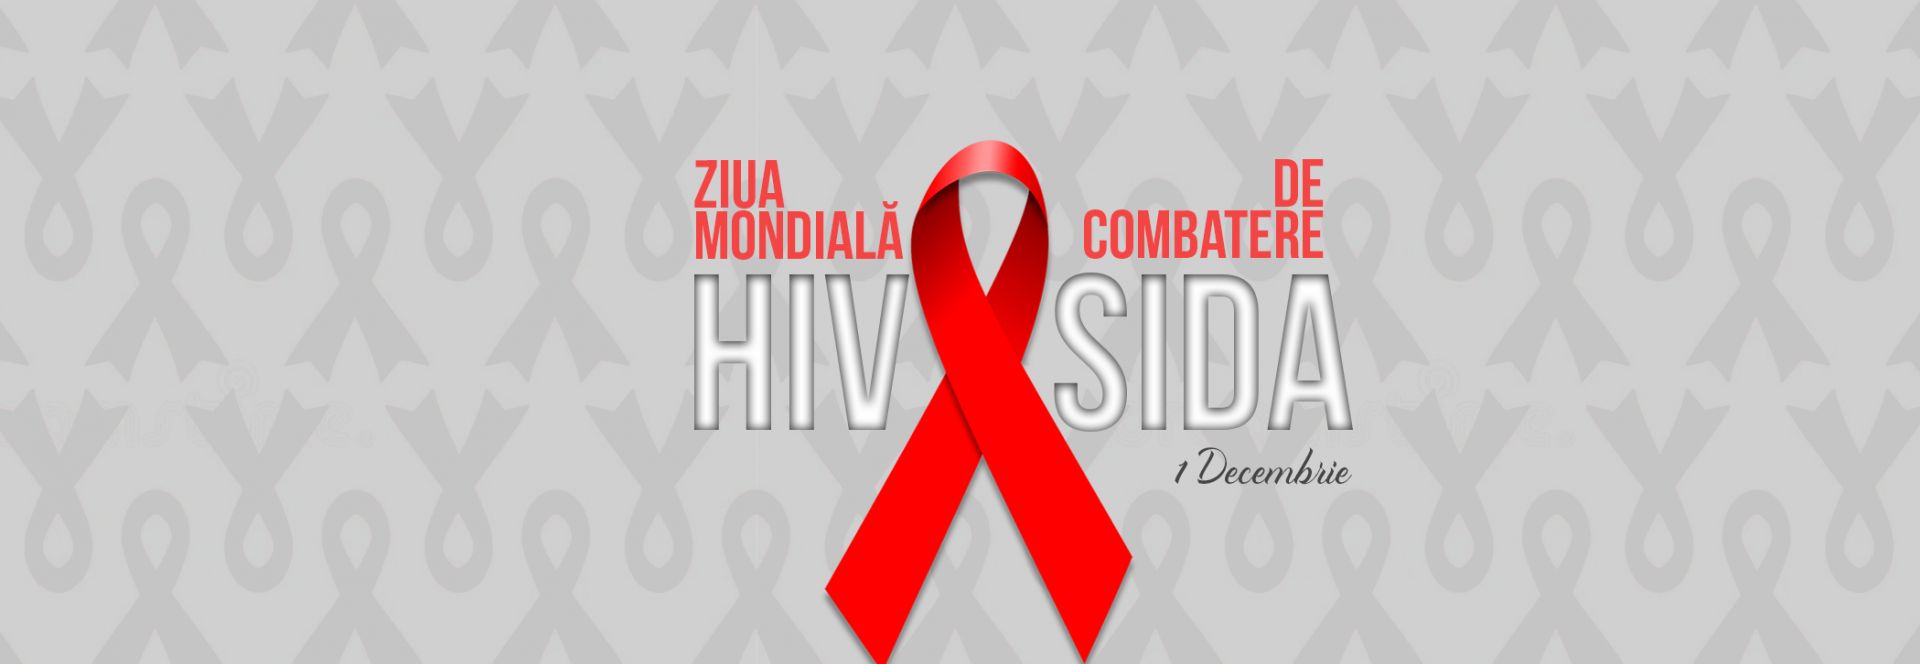 Ziua Mondială de Combatere HIV/SIDA